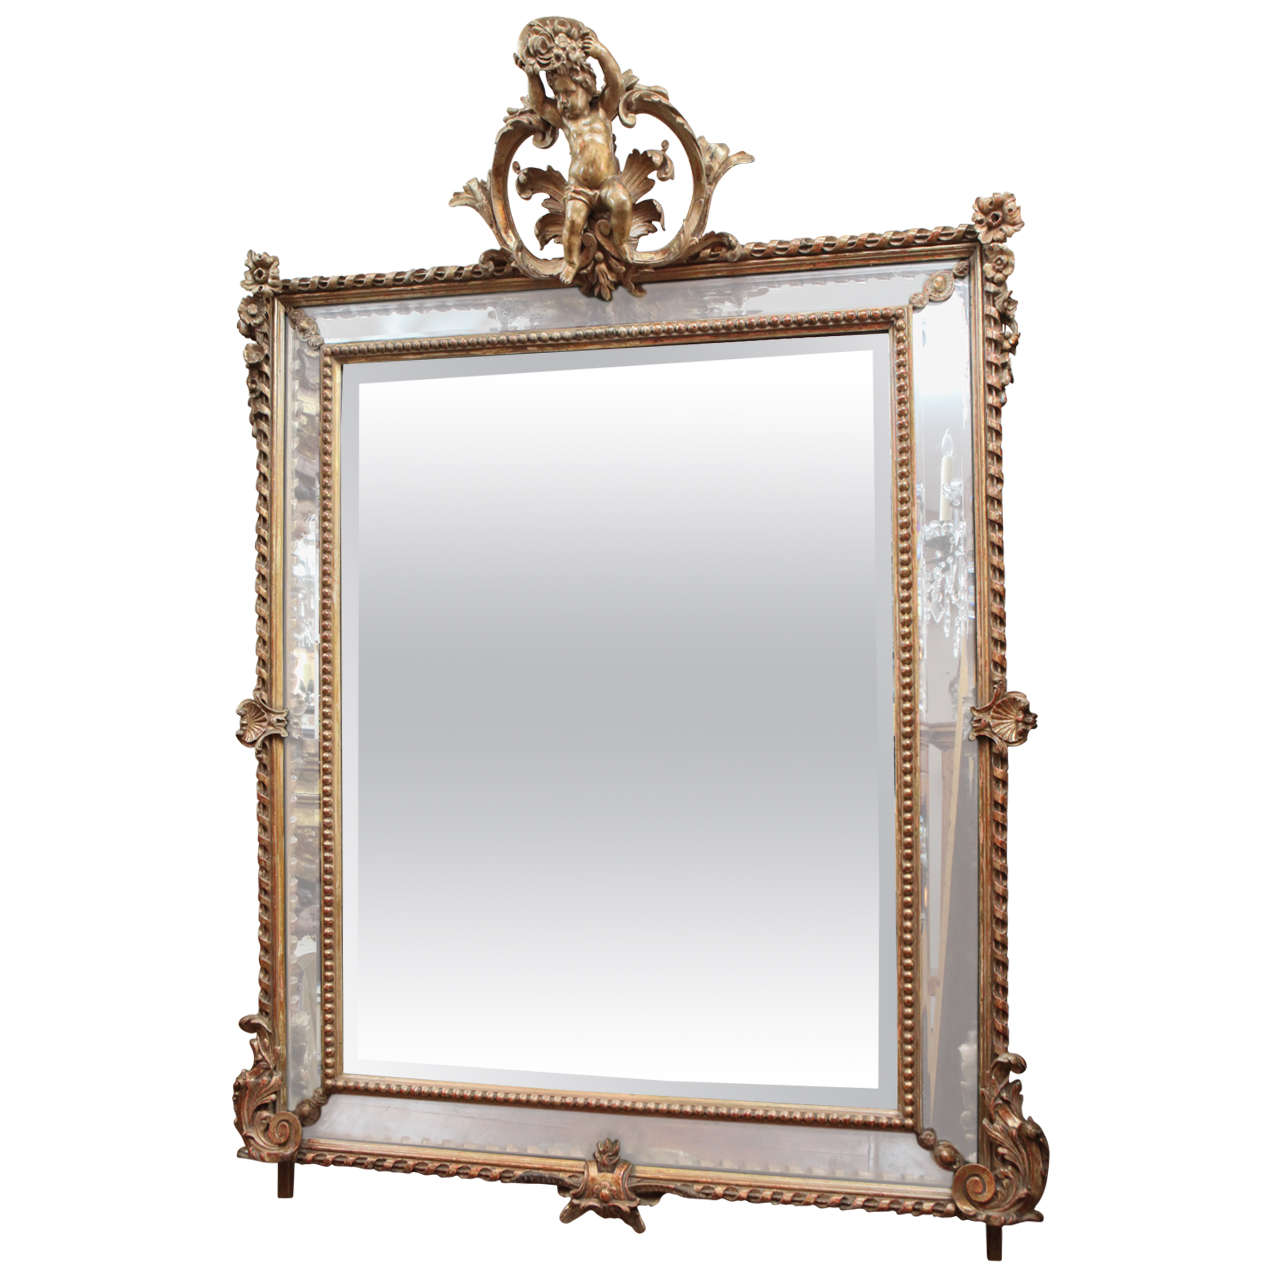 Miroir en bois doré à double encadrement du XIXe siècle avec chérubin sur la couronne